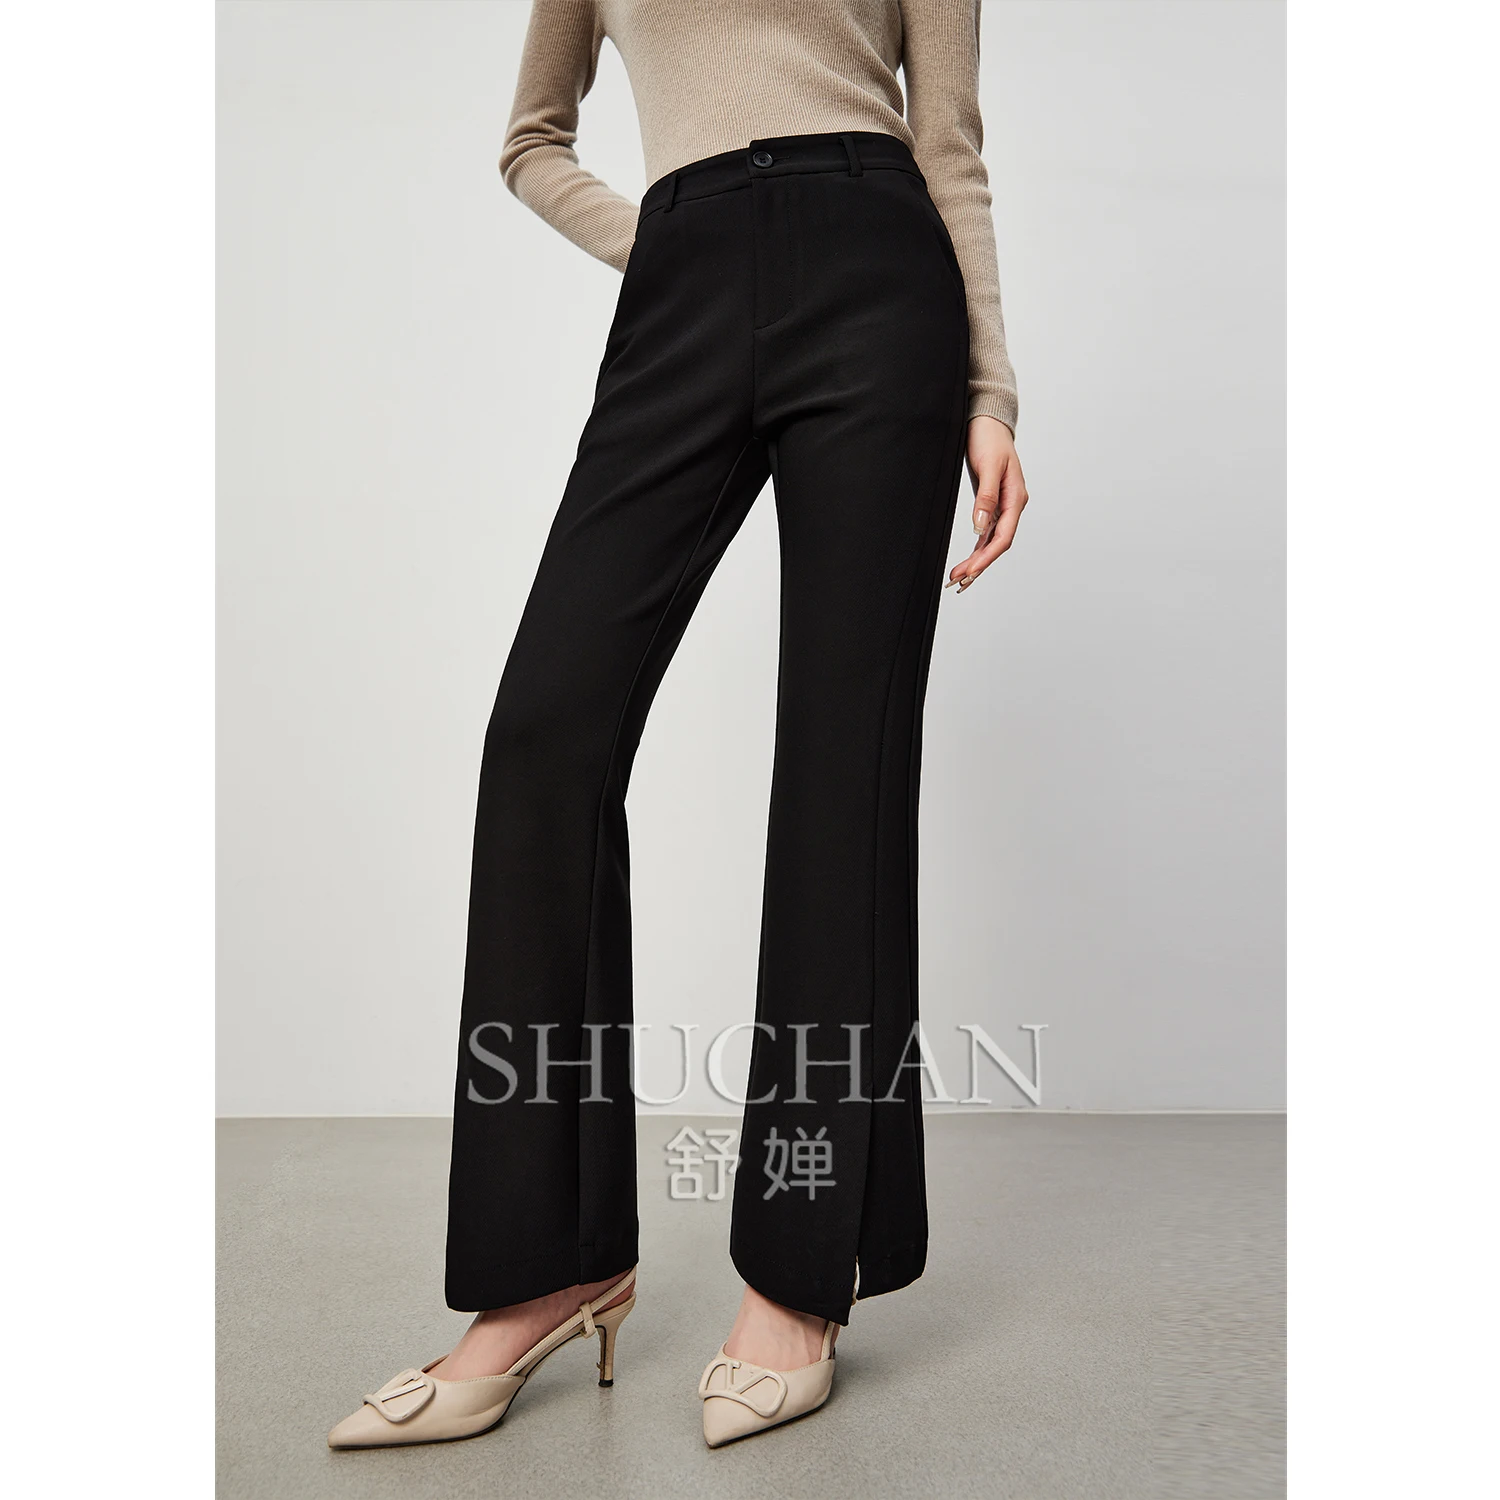 

SHUCHAN Pantalon Pour Femme Streetwear Women Full Length Office Lady Skinny Flare Pants Zipper Fly Trousers Women